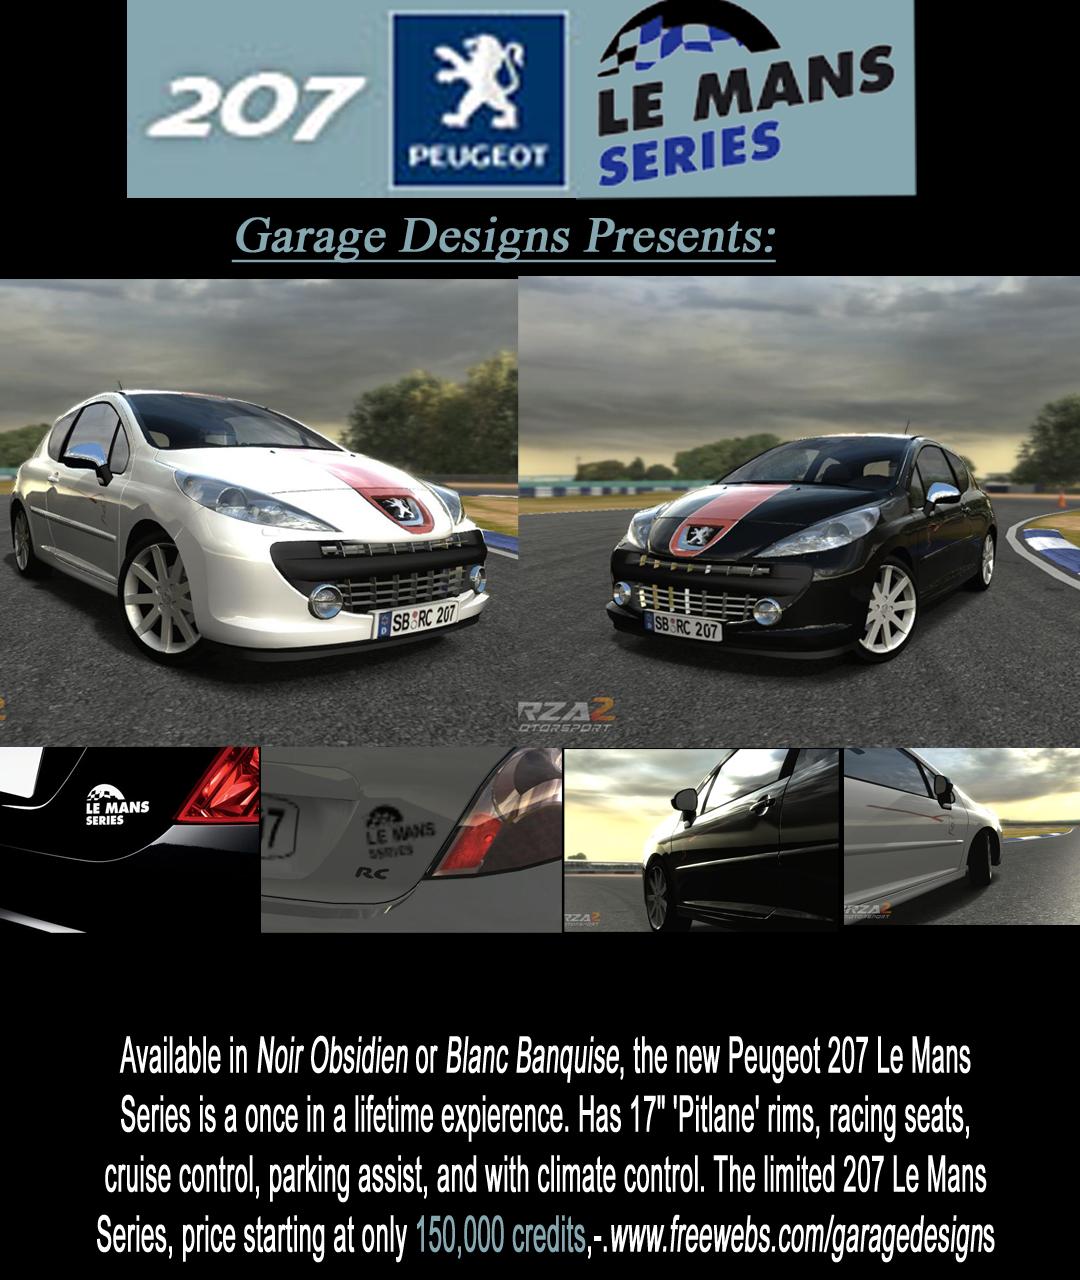 Peugeot 207 Le Mans Series